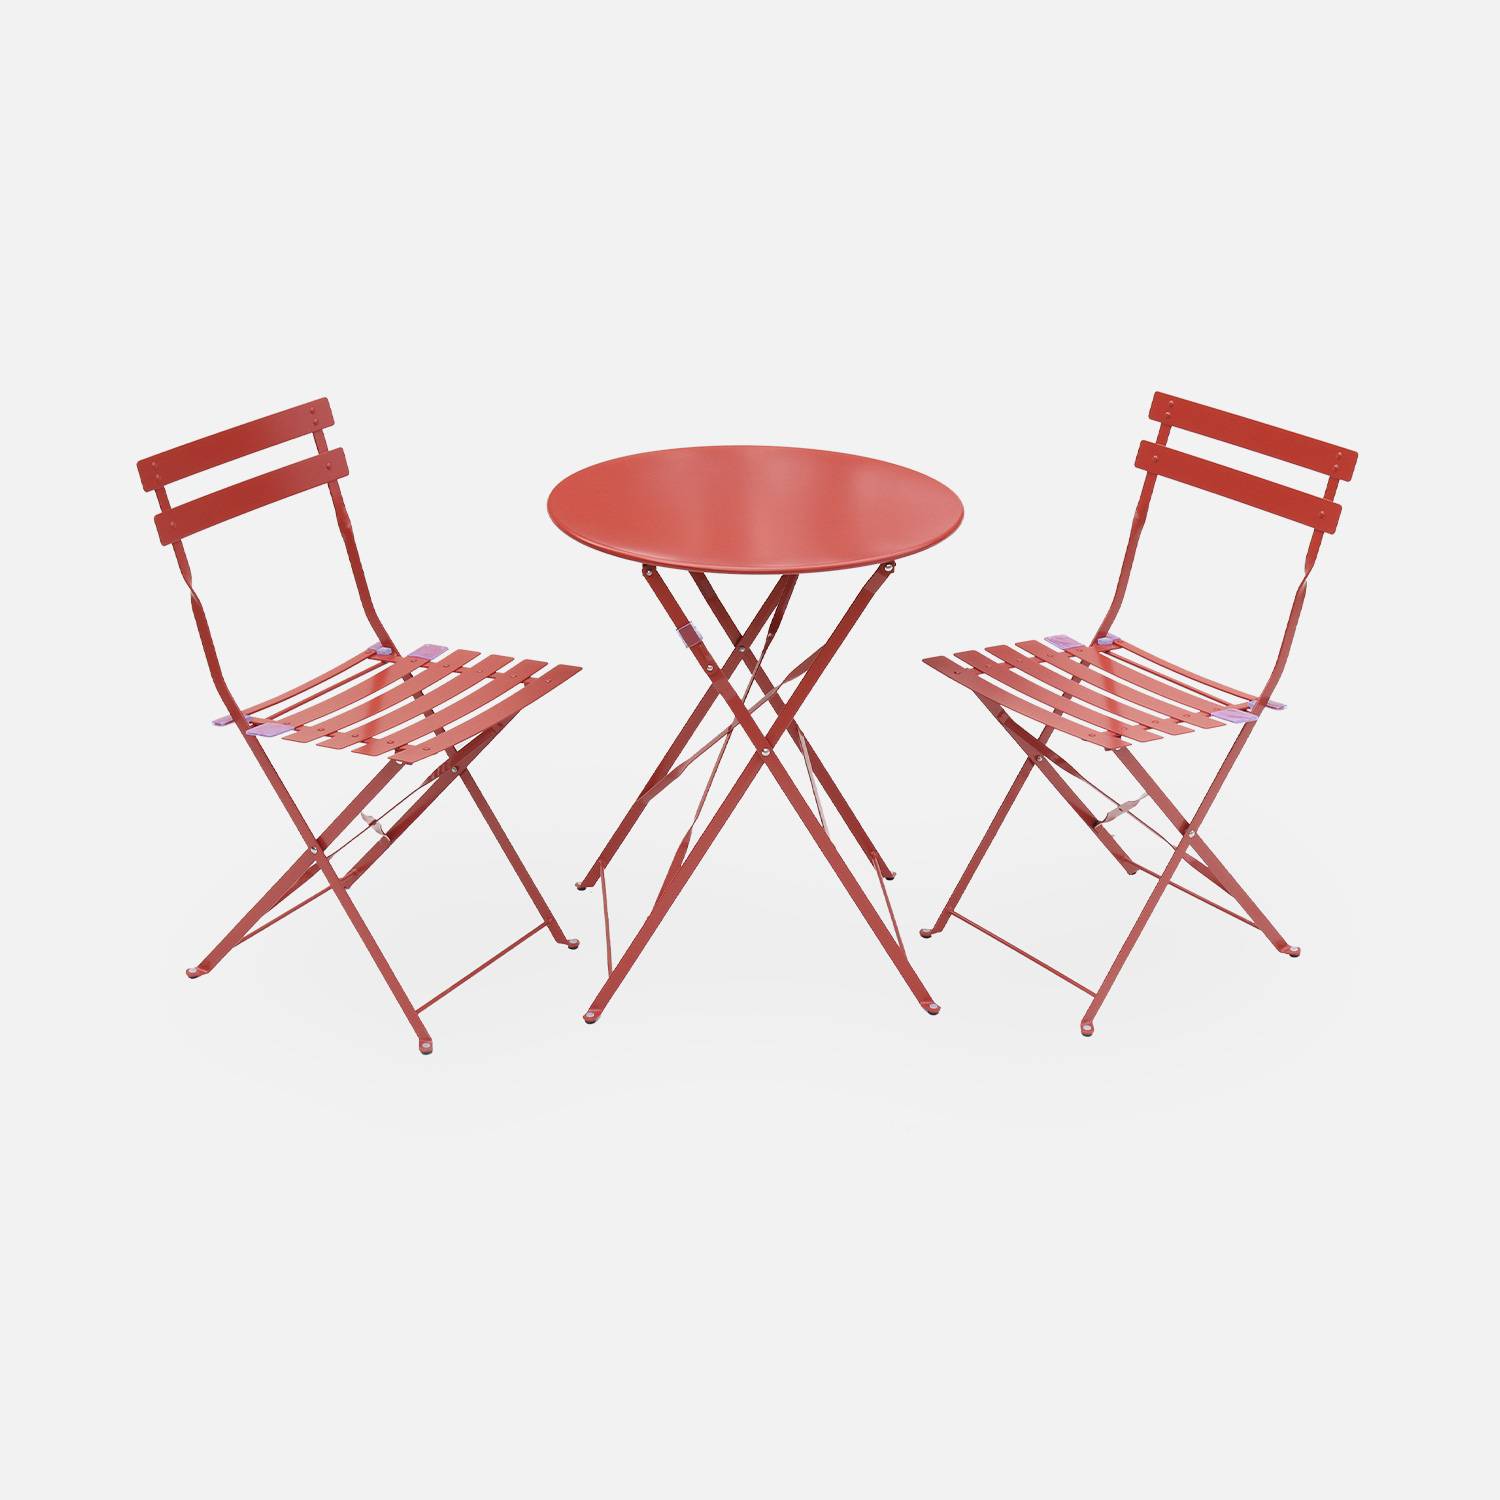 Conjunto de jardín, mesa redonda y dos sillas plegables | sweeek